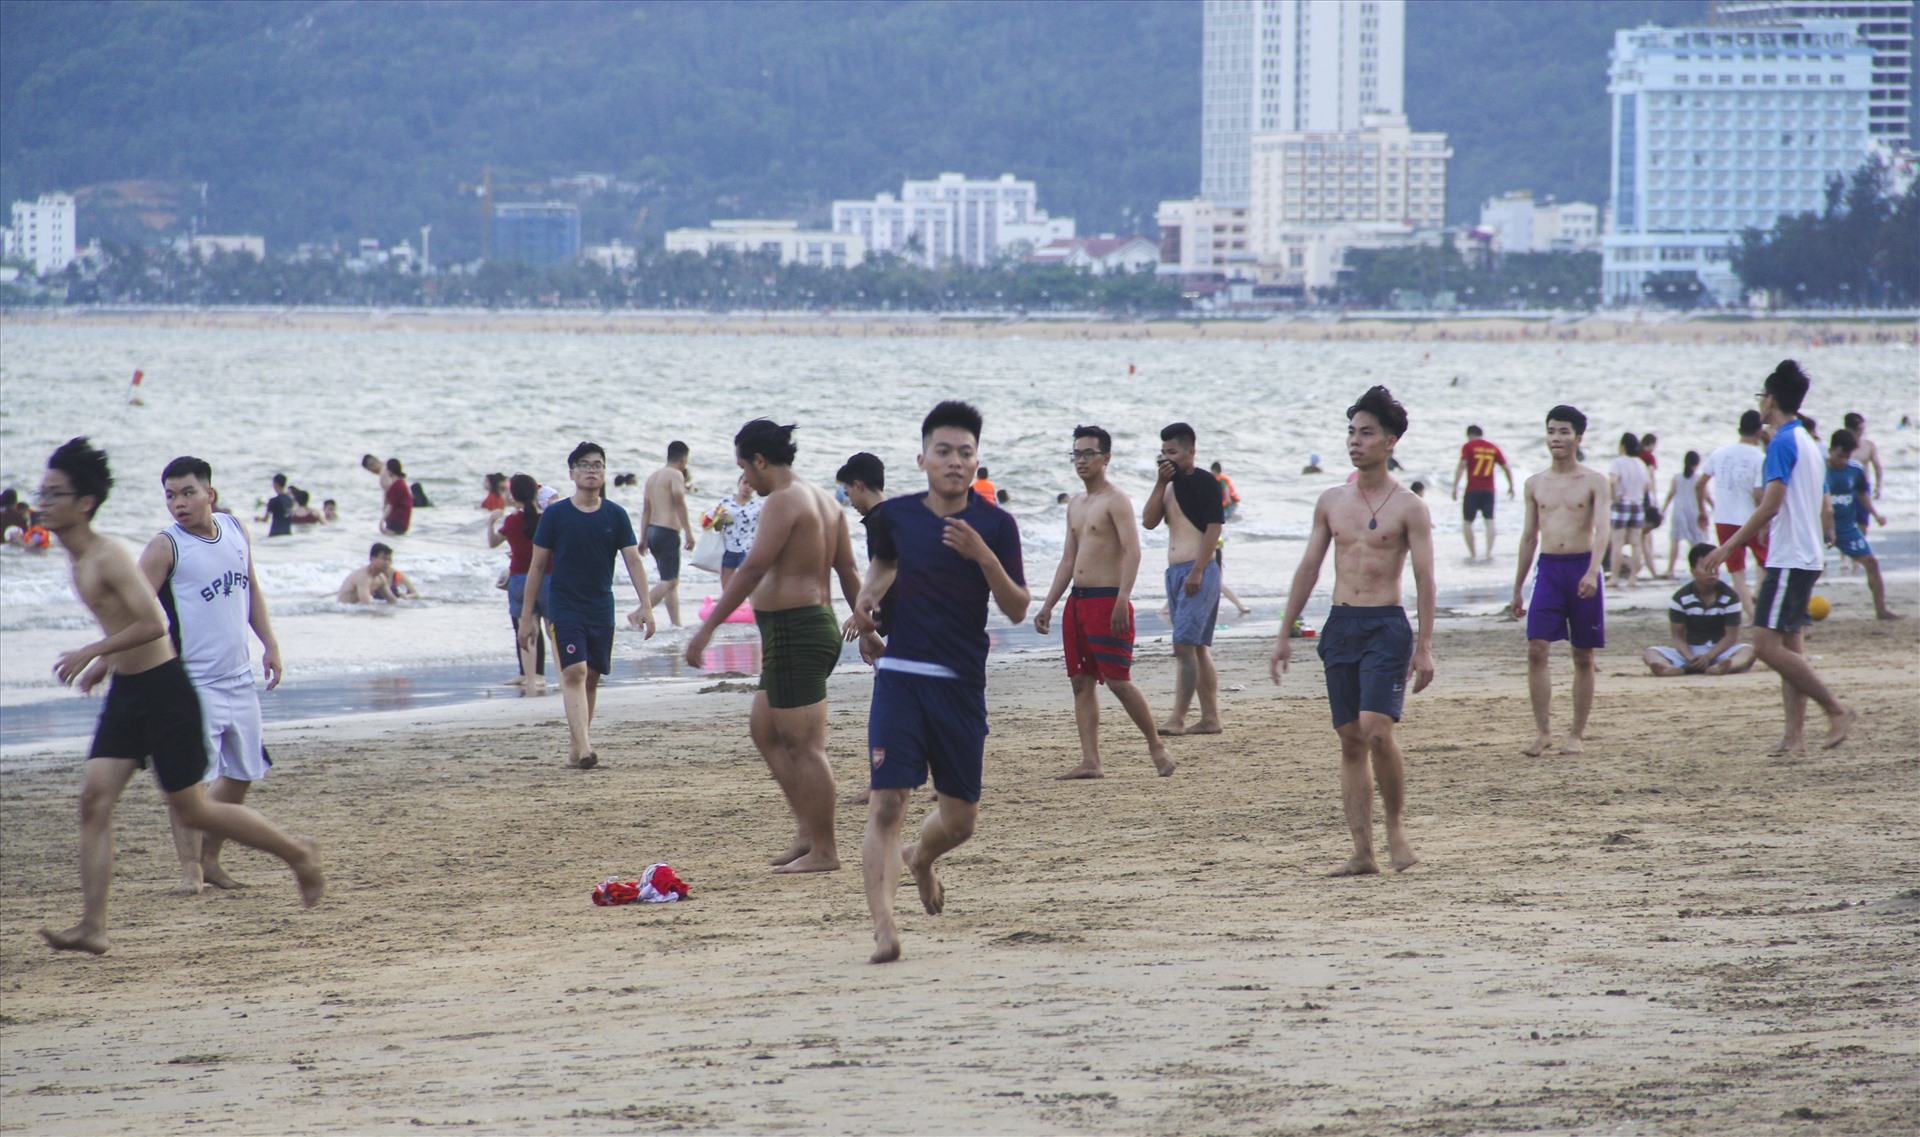 Lượng người tắm biển trải đều dọc bãi biển Quy Nhơn từ khu núi Ghềnh Ráng dọc đường An Dương Vương kéo dài xuống đường Xuân Diệu. Bãi tắm nào cũng đông kín người.